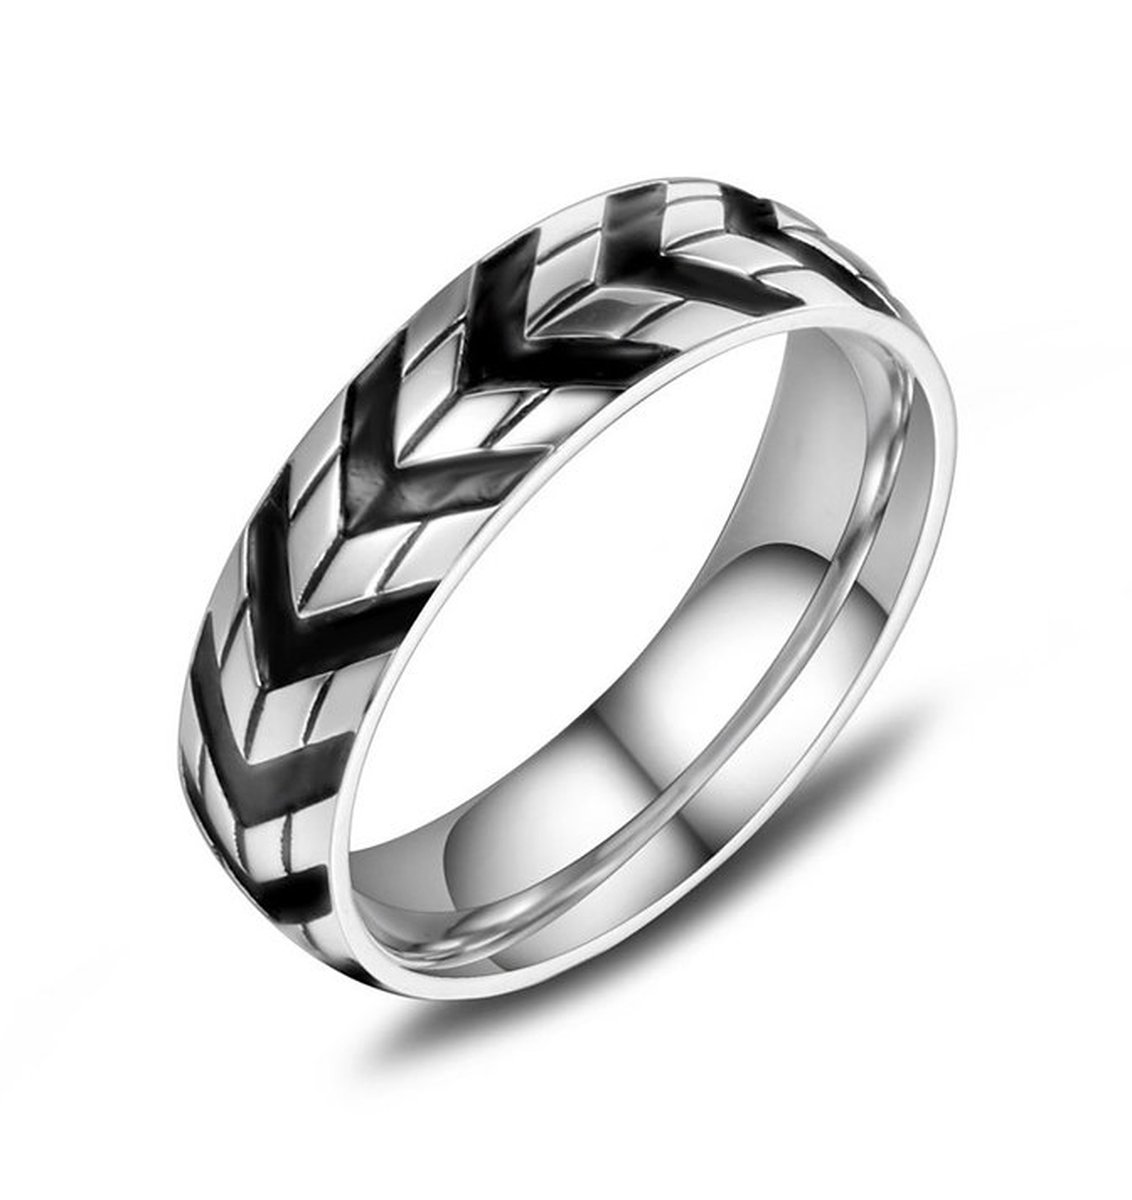 Ring heren staal zilver zwart kleur - Stalen Ringen van Mauro Vinci - met Geschenkverpakking - Sieraden voor de Man - Maat 8